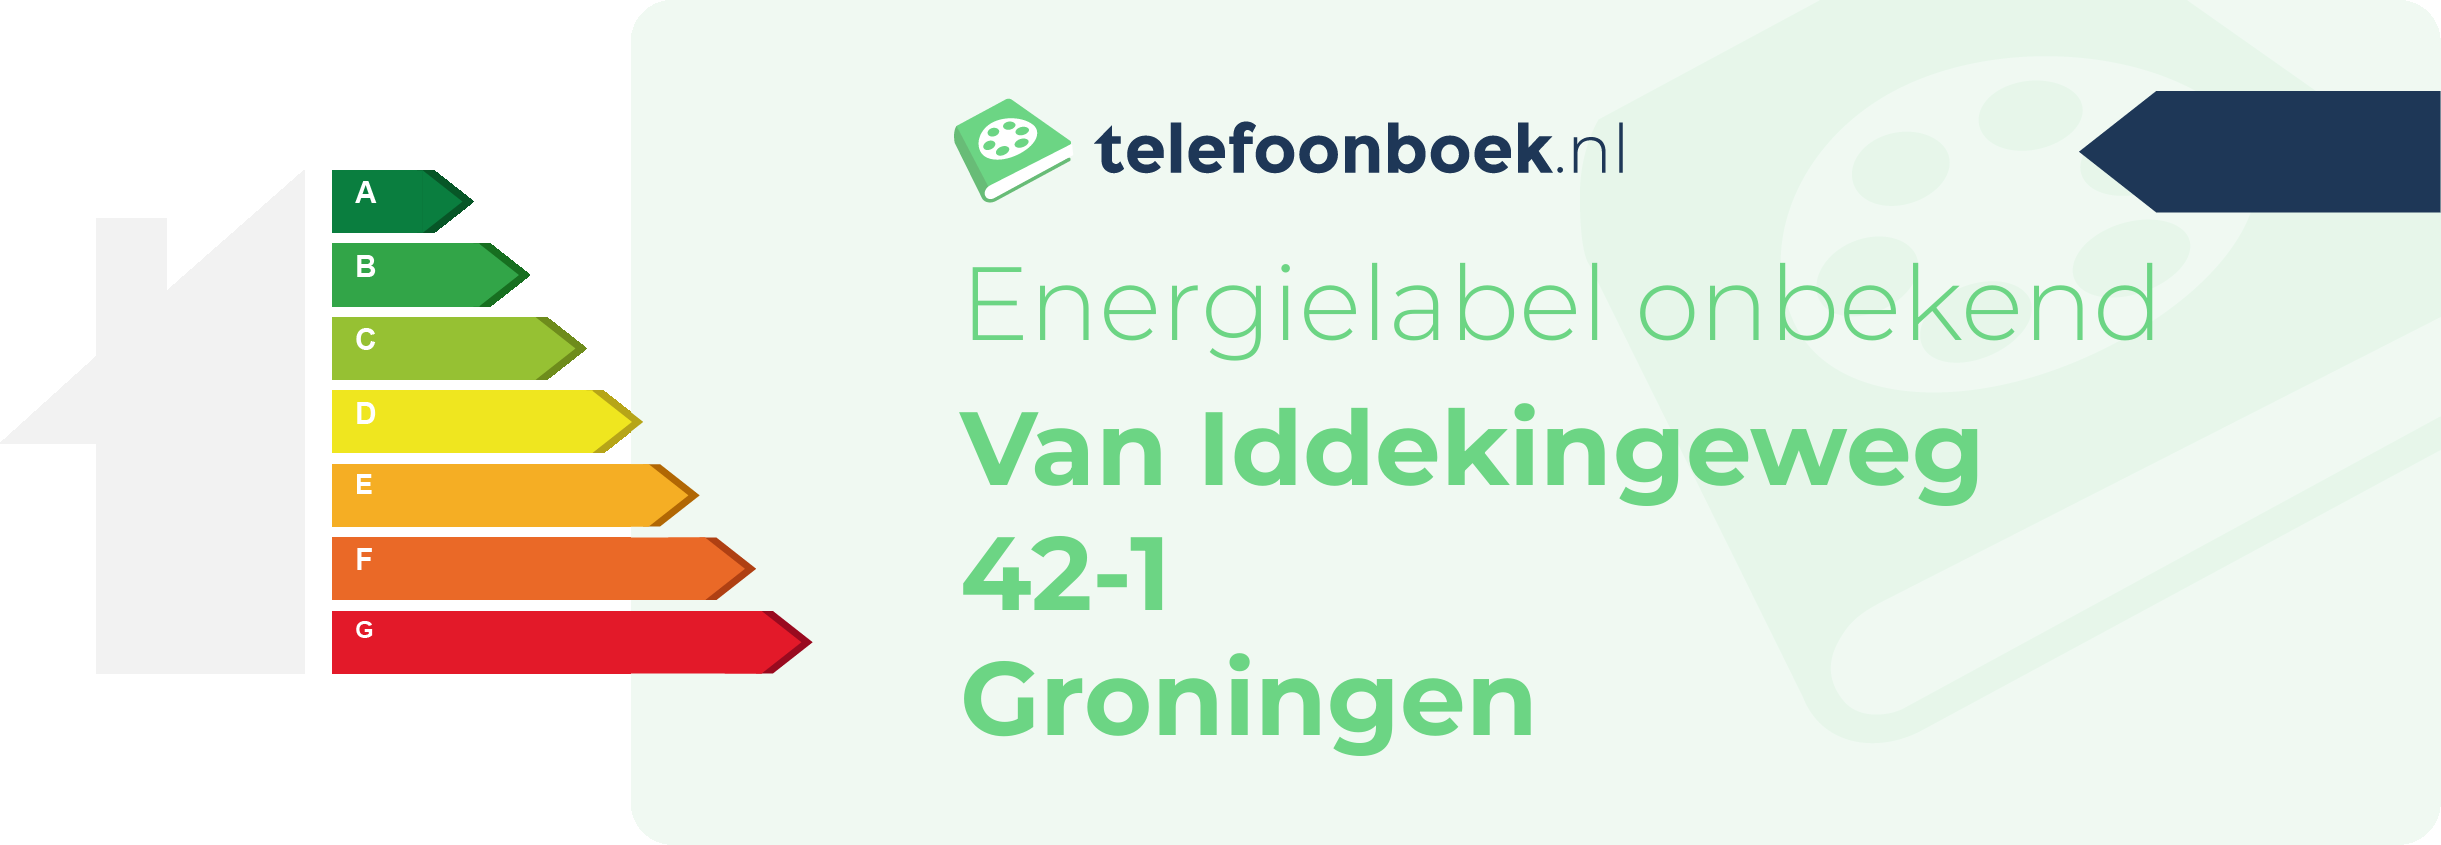 Energielabel Van Iddekingeweg 42-1 Groningen